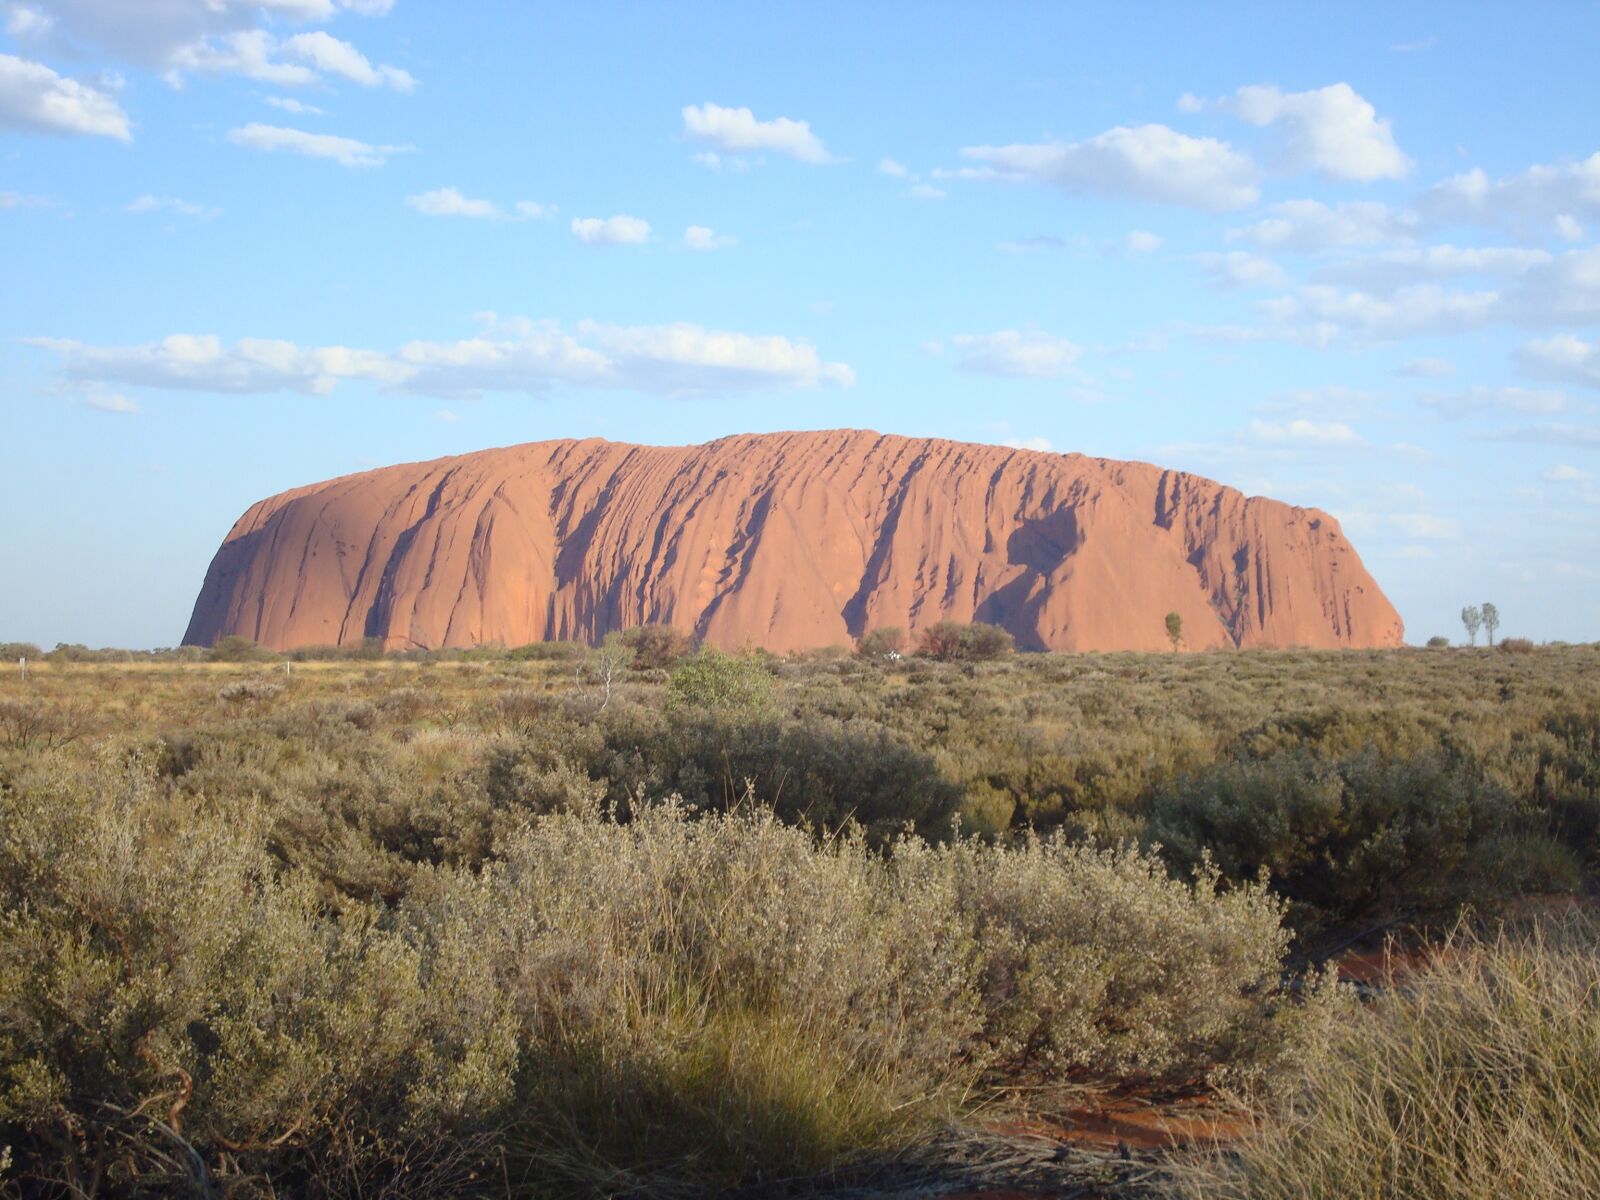 Sony DSC-W80 sample photo. Australia, outback, landscape photography